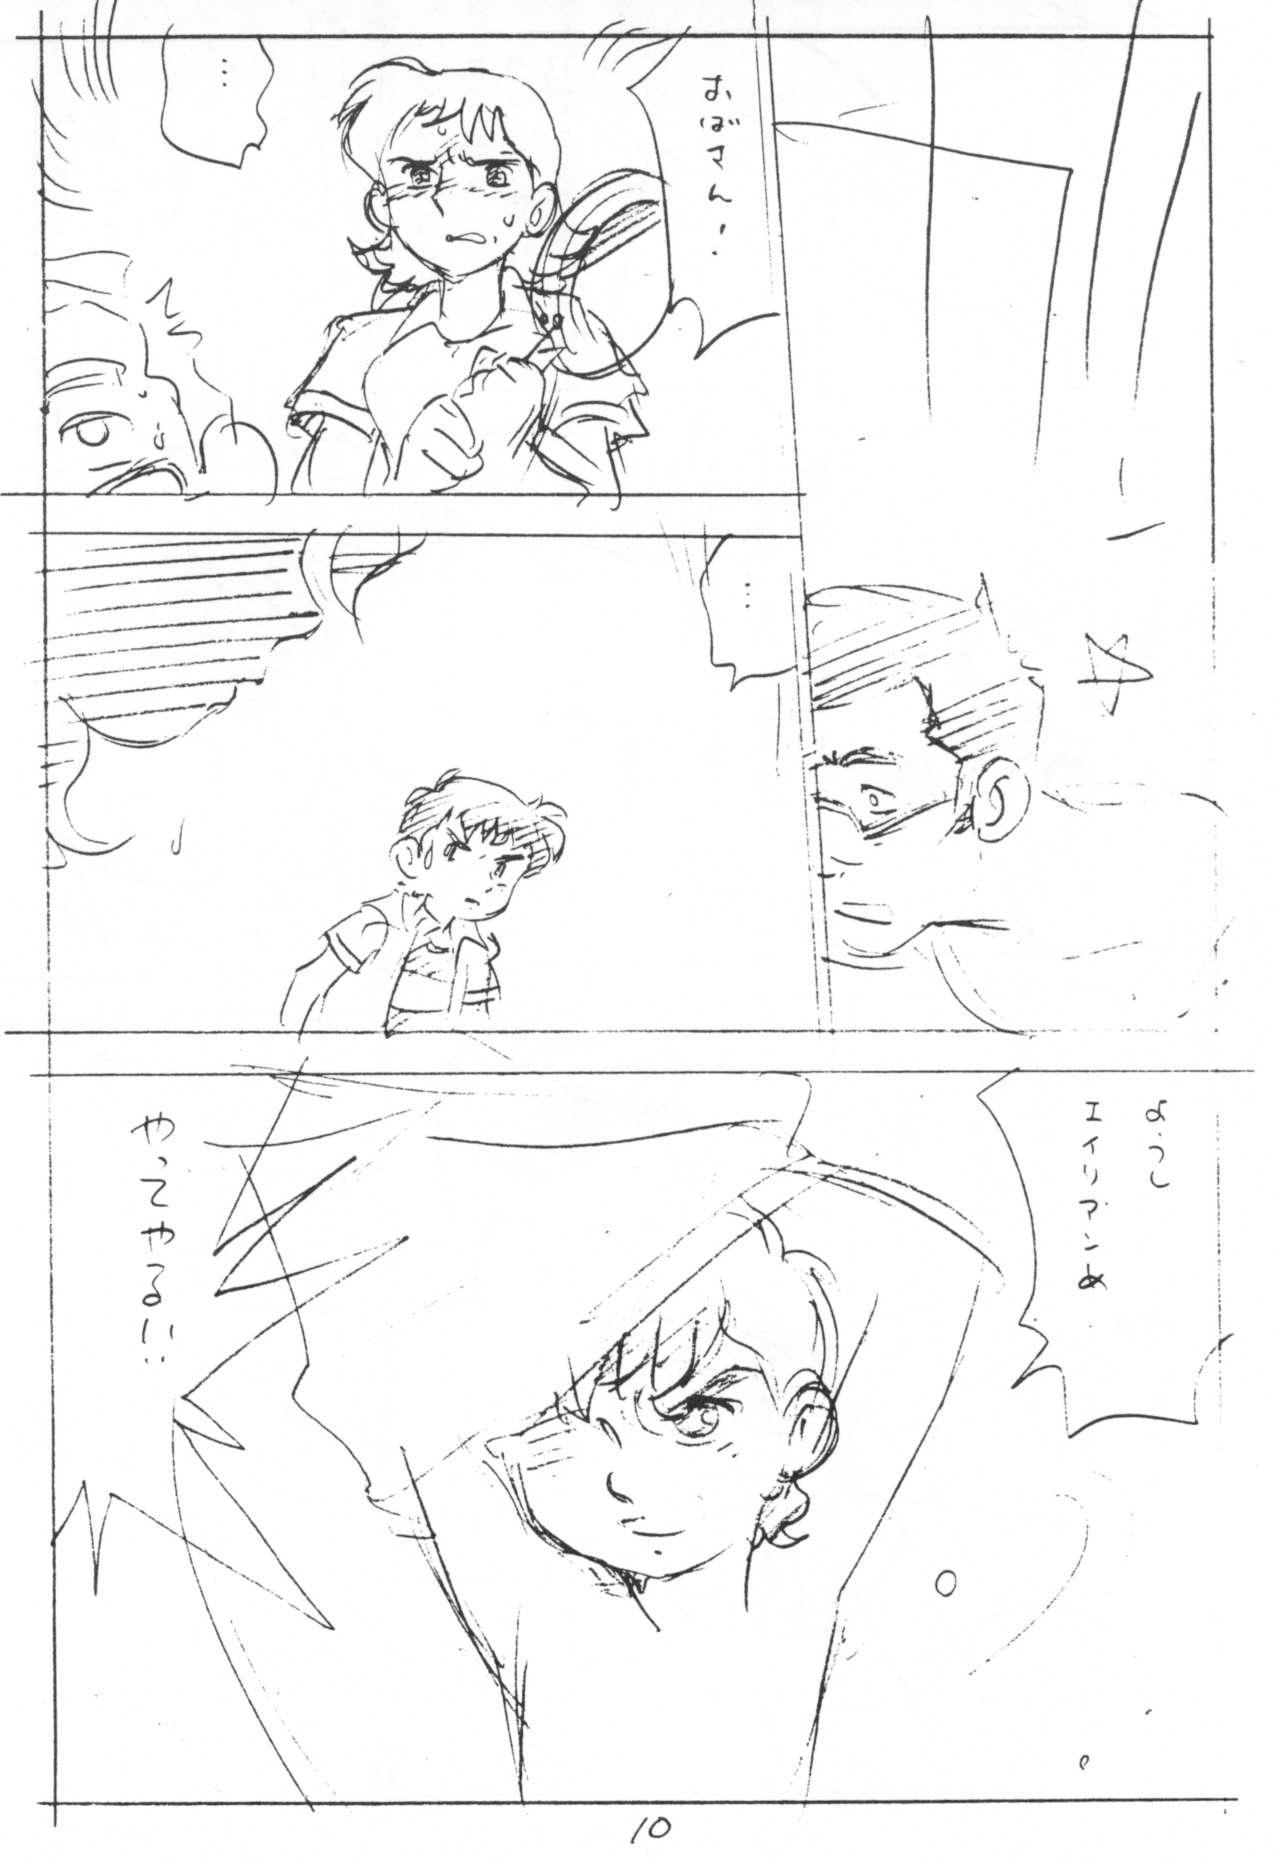 Groping Enpitsu Kaki Eromanguwa 1999-nen Natsu no Gou - Tetsujin 28-gou Car - Page 10